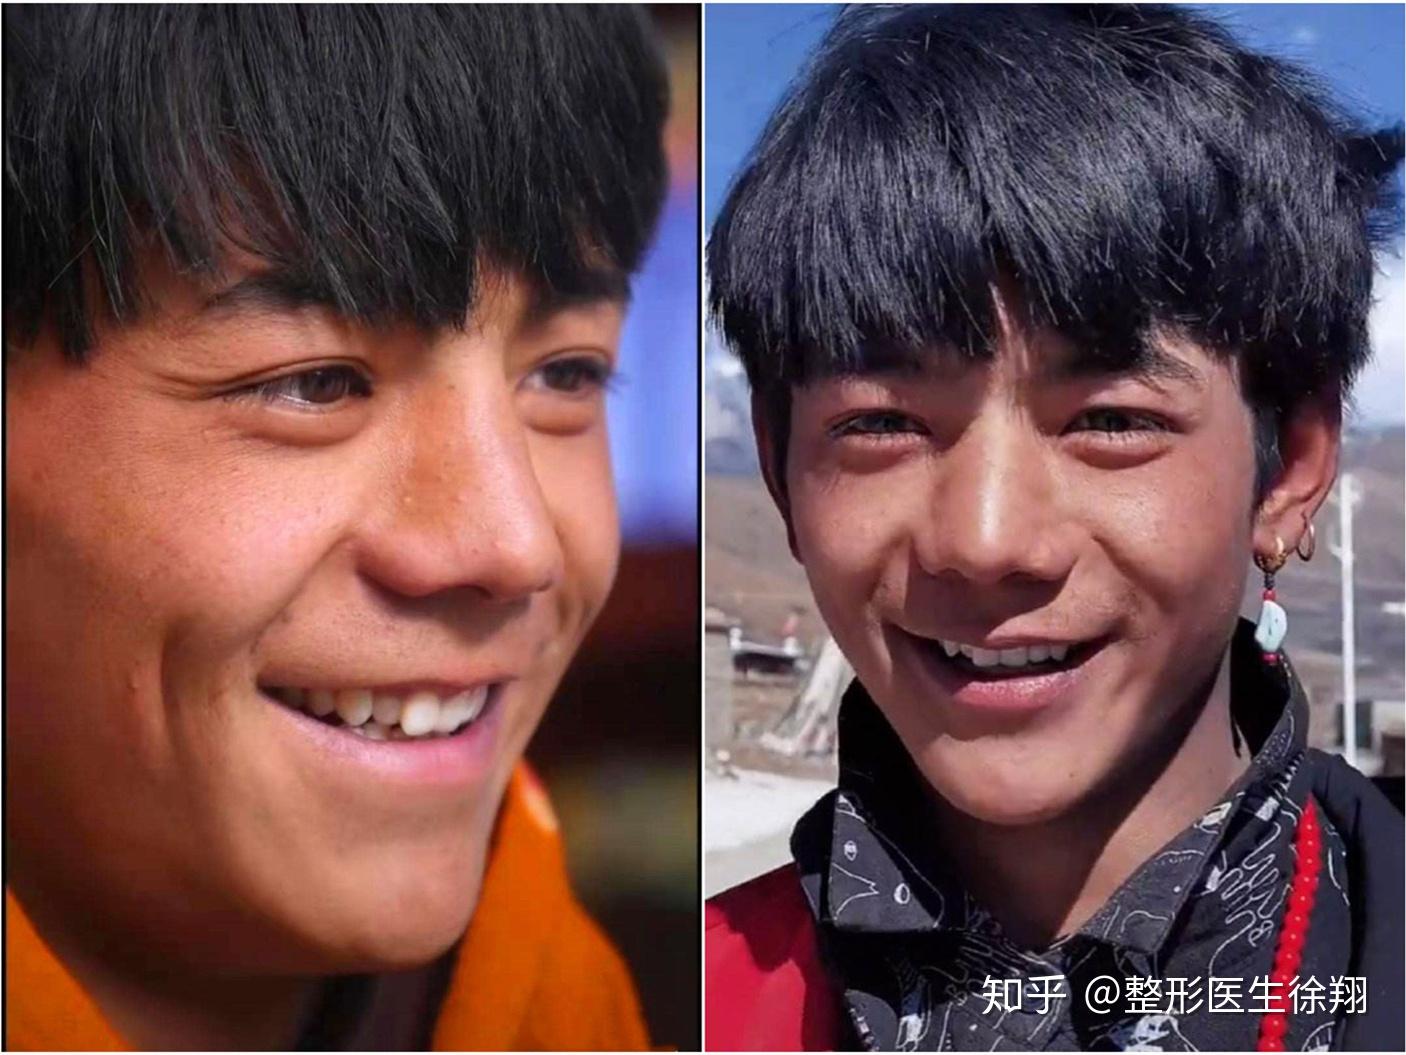 韩国优雅人整形外科——男生鼻子整容模板来了 - 哔哩哔哩